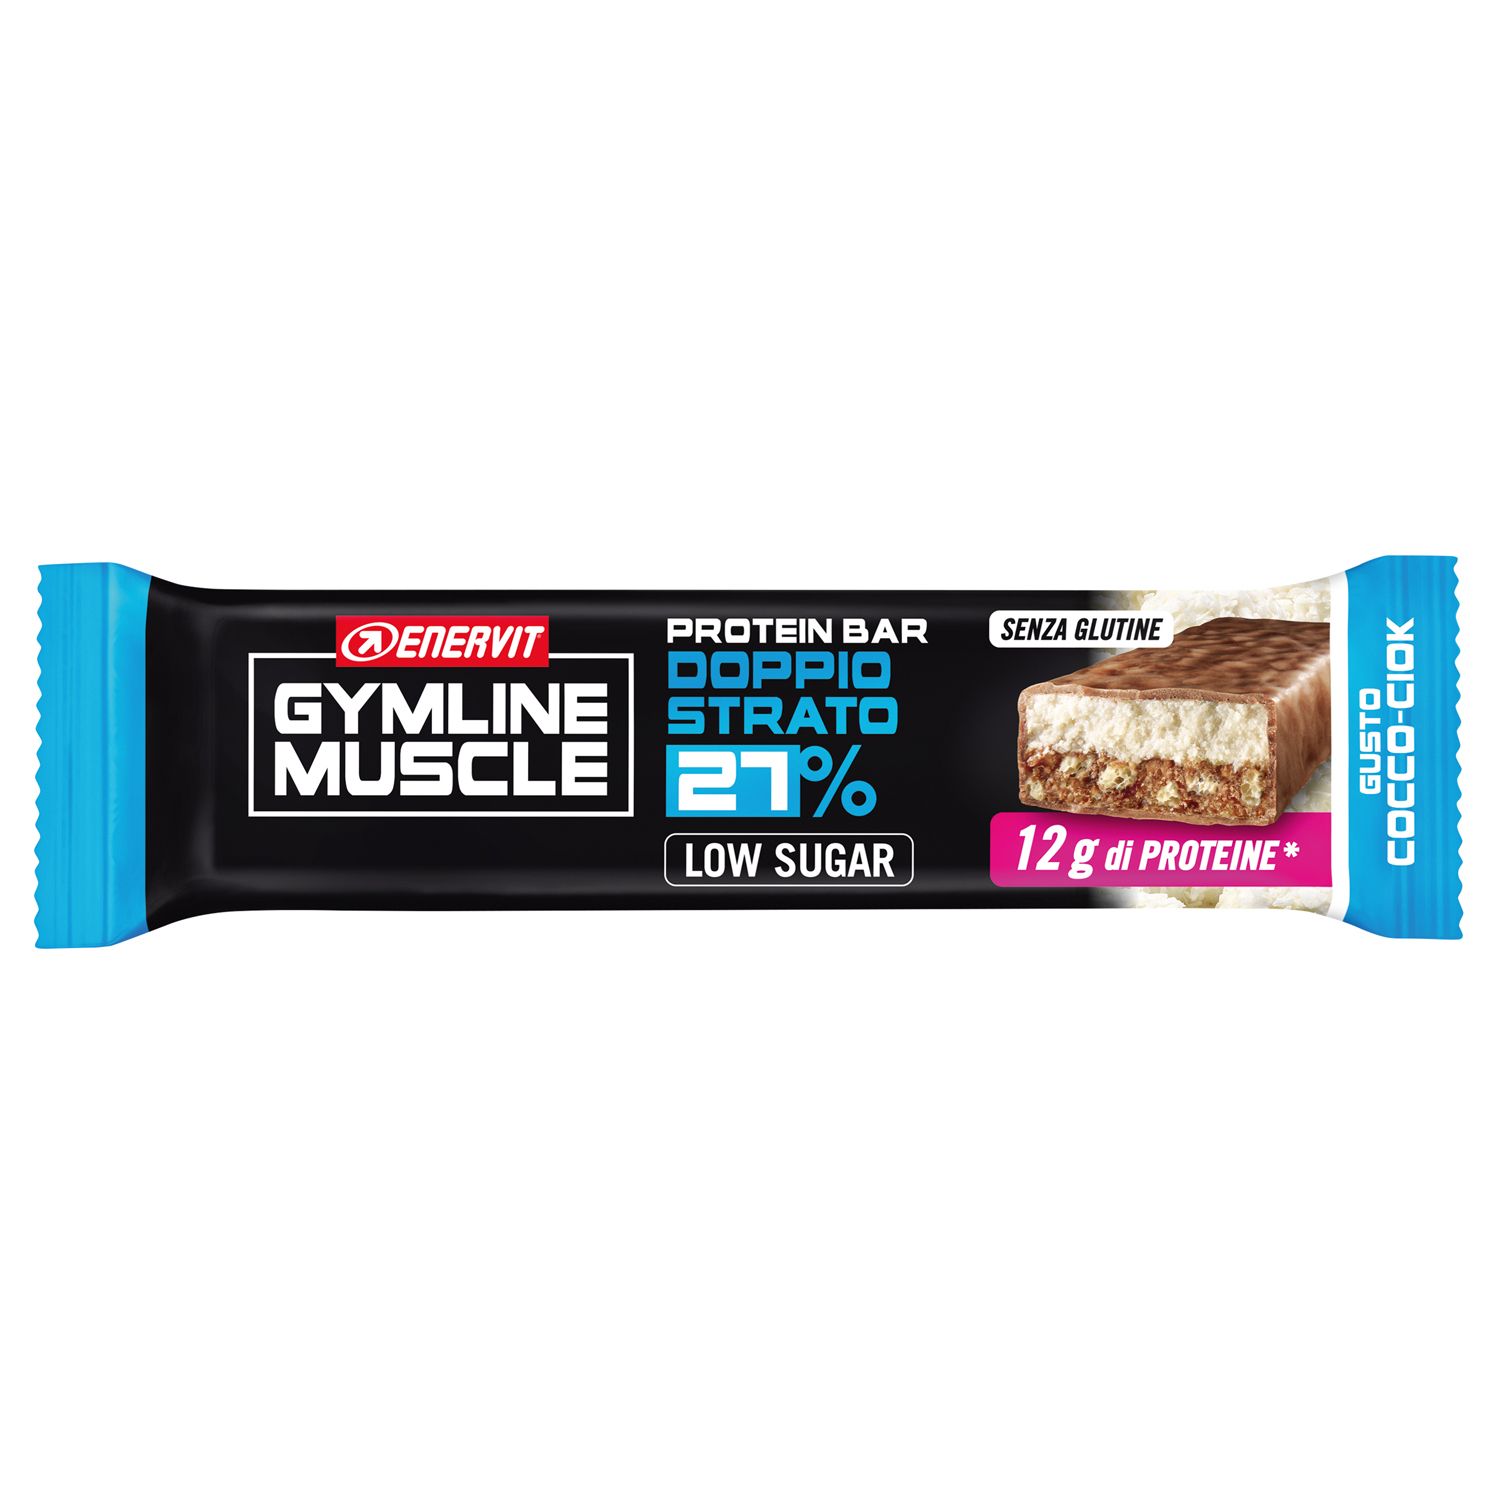 GYMLINE Protein Bar 27% Cocco Ciok